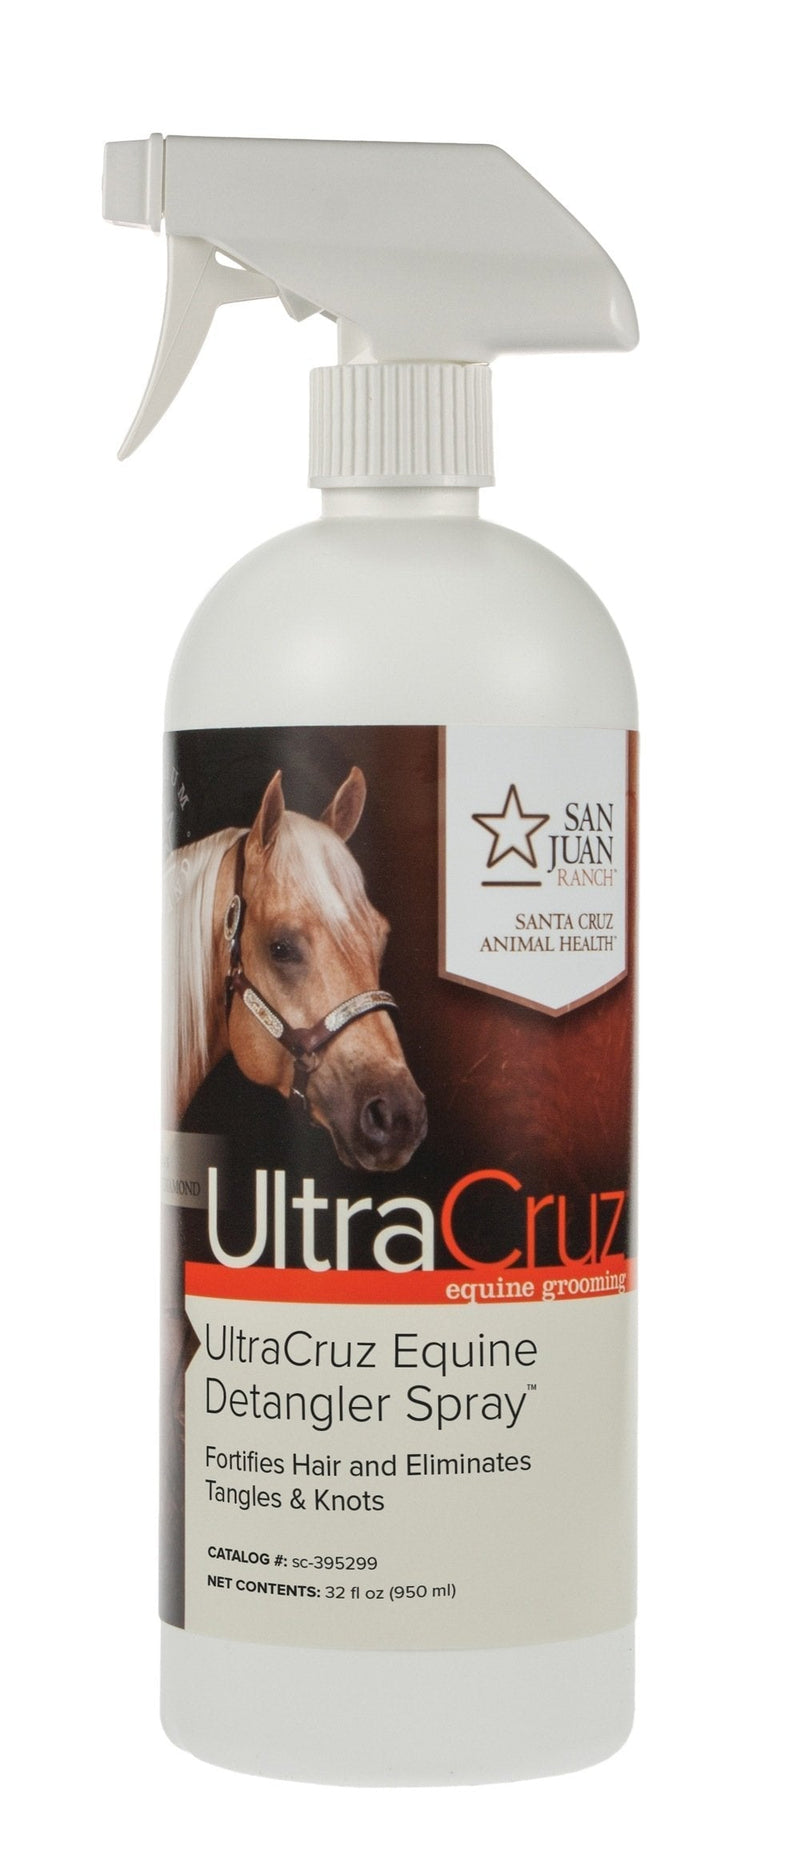 [Australia] - UltraCruz sc-395299 Equine Detangler Spray for Horses, 32 oz 